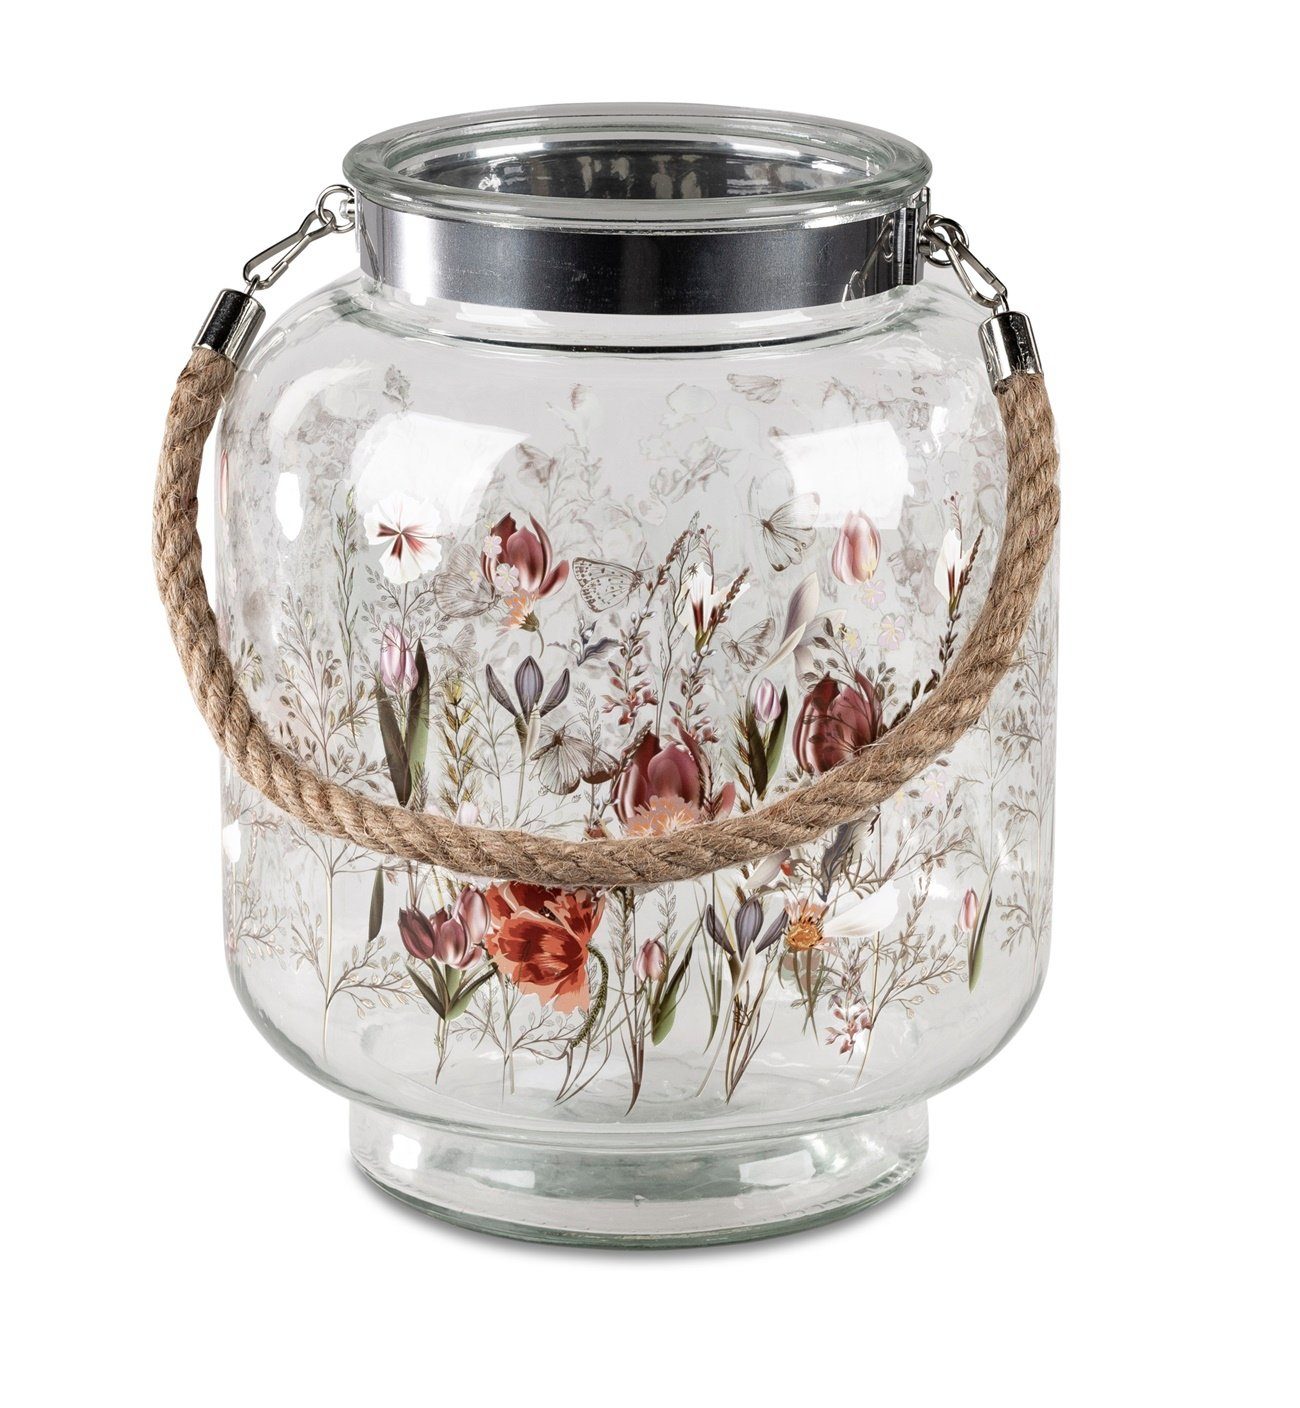 dekojohnson Windlicht Windlicht-Glas Glaslaterne Blumendekor 22x28cm